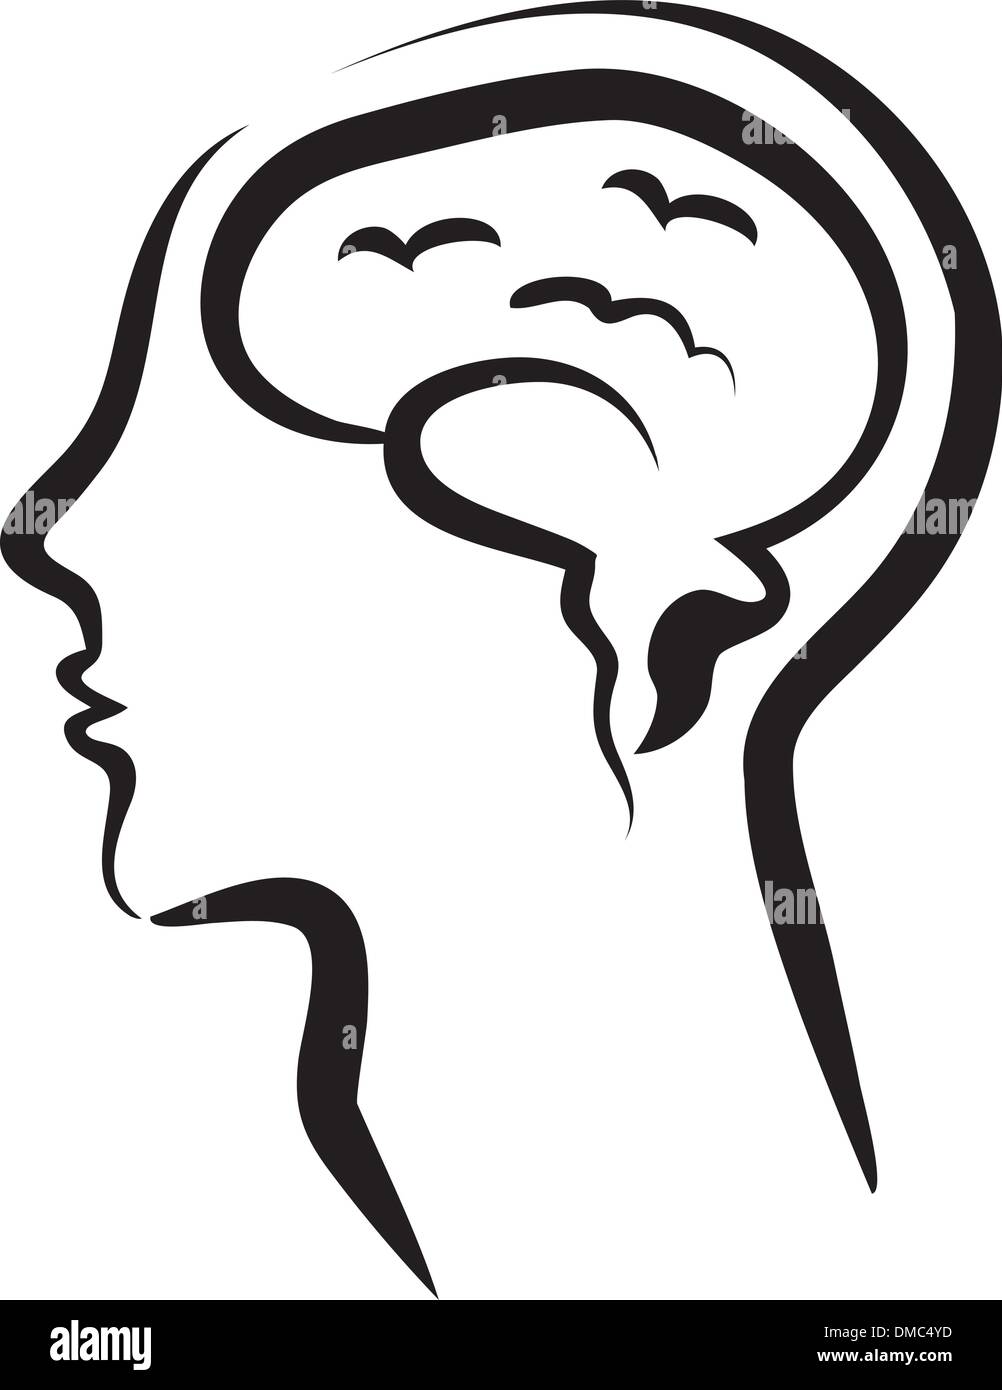 Cerveau humain dans une silhouette head Illustration de Vecteur